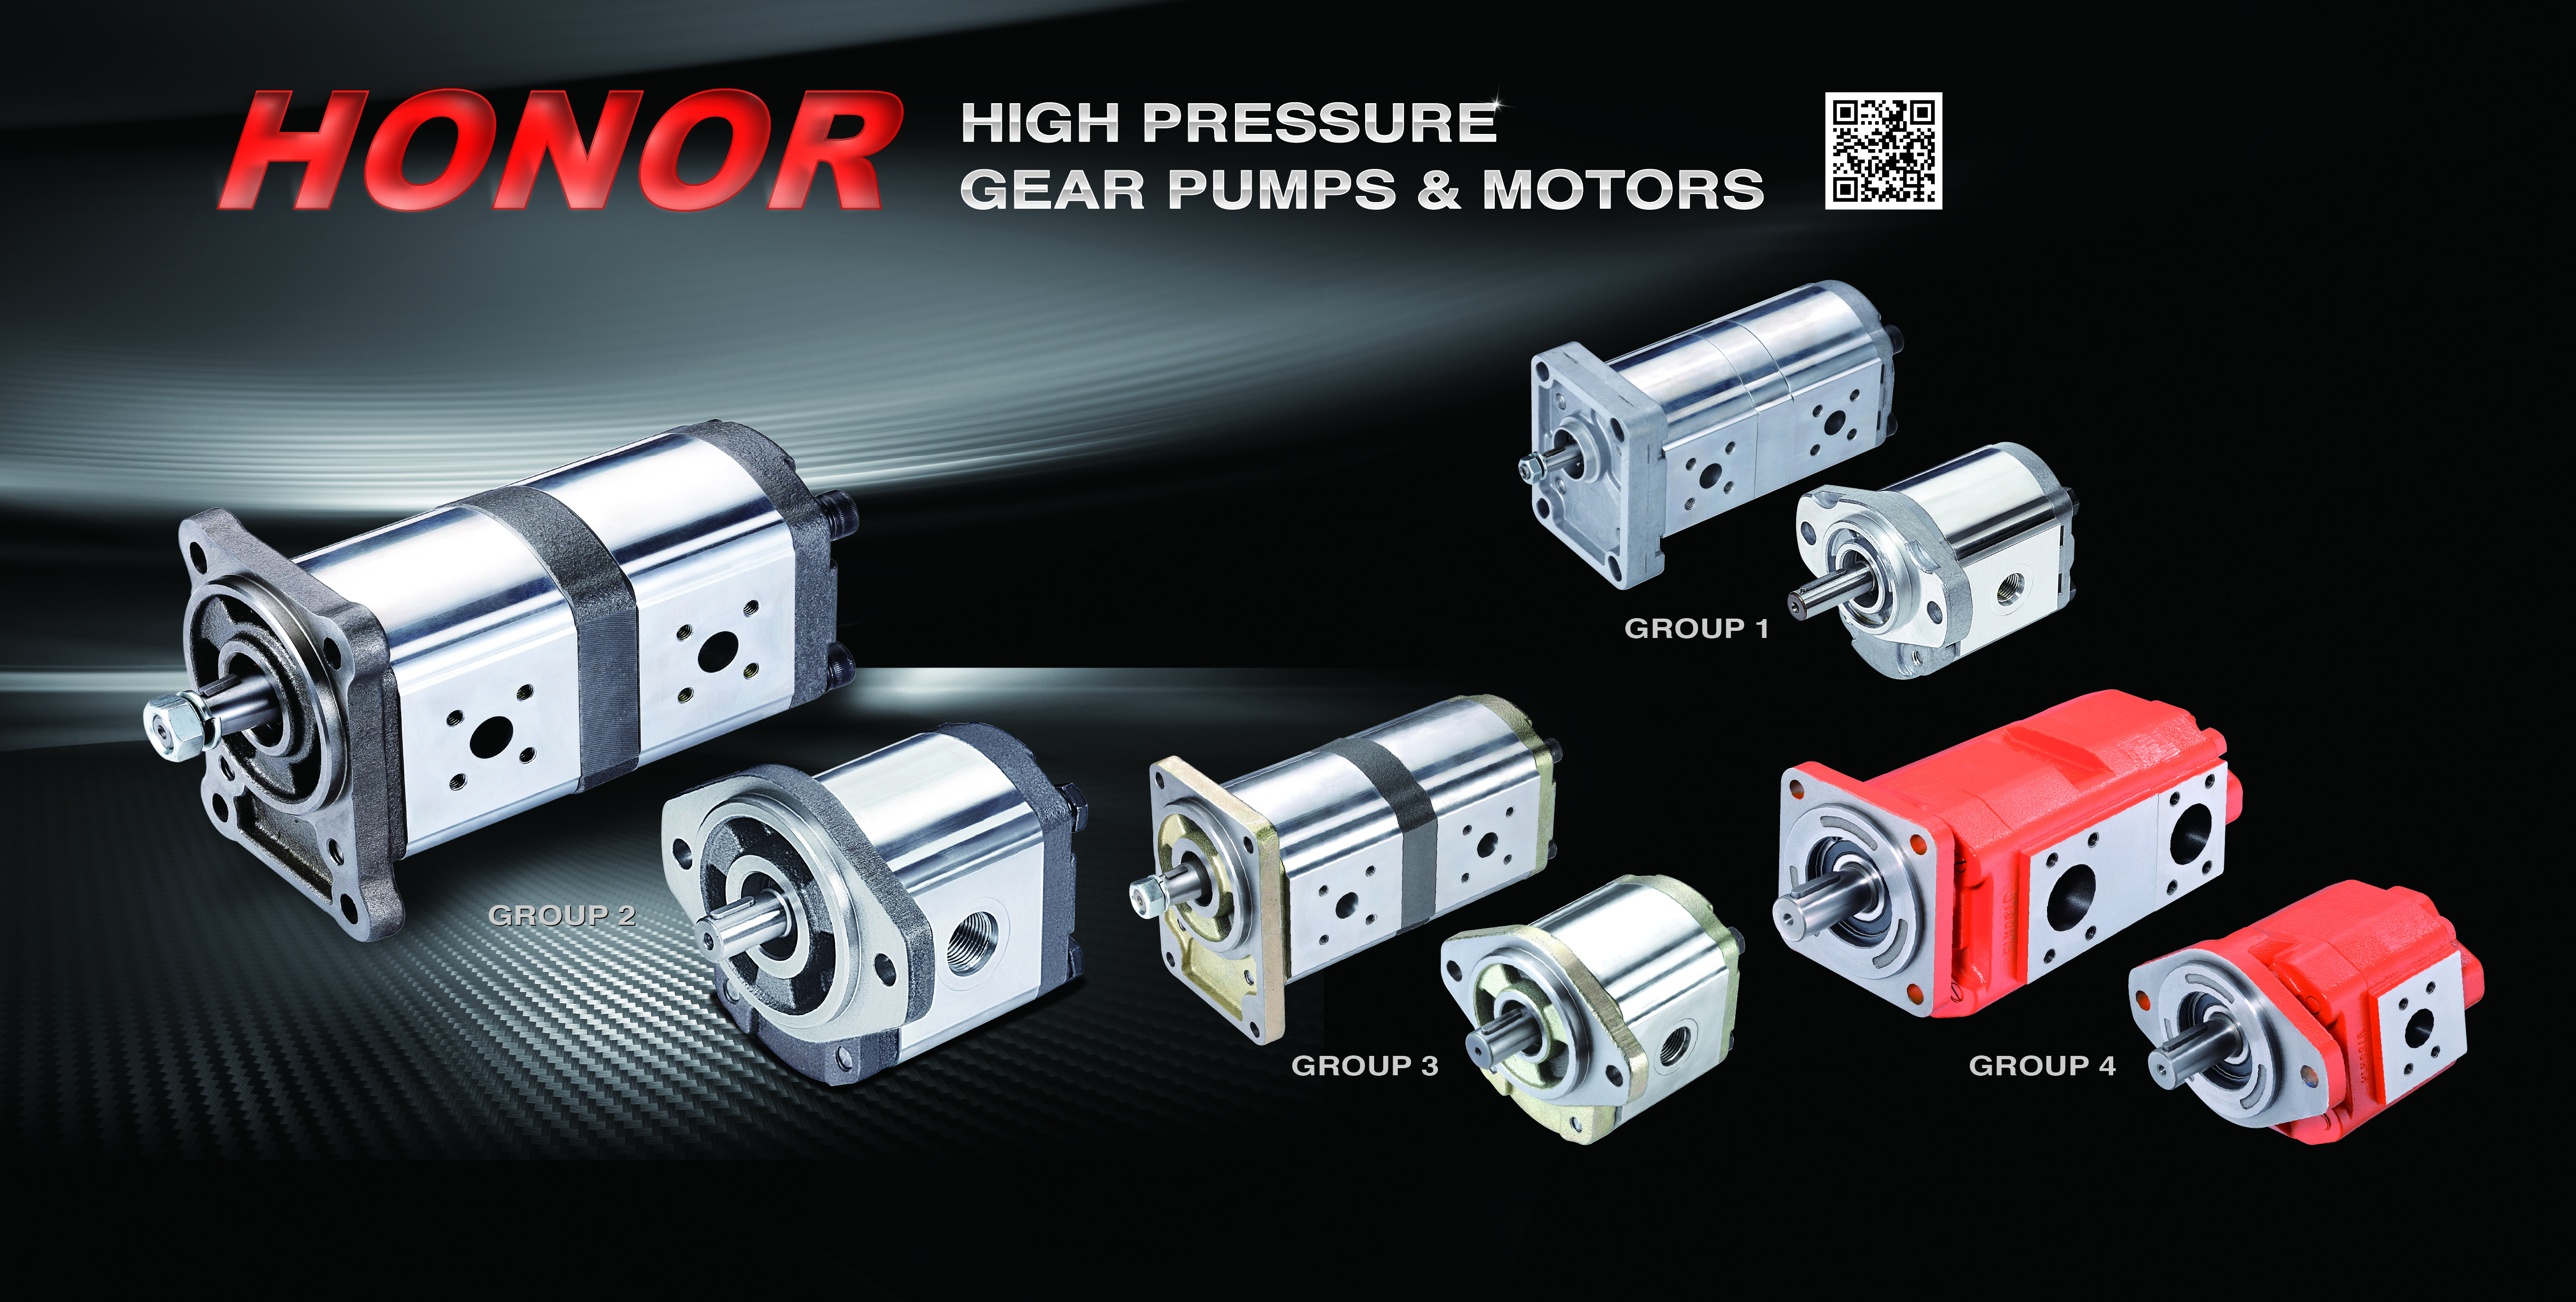 Hihg Pressure Gear Pumps & Motors